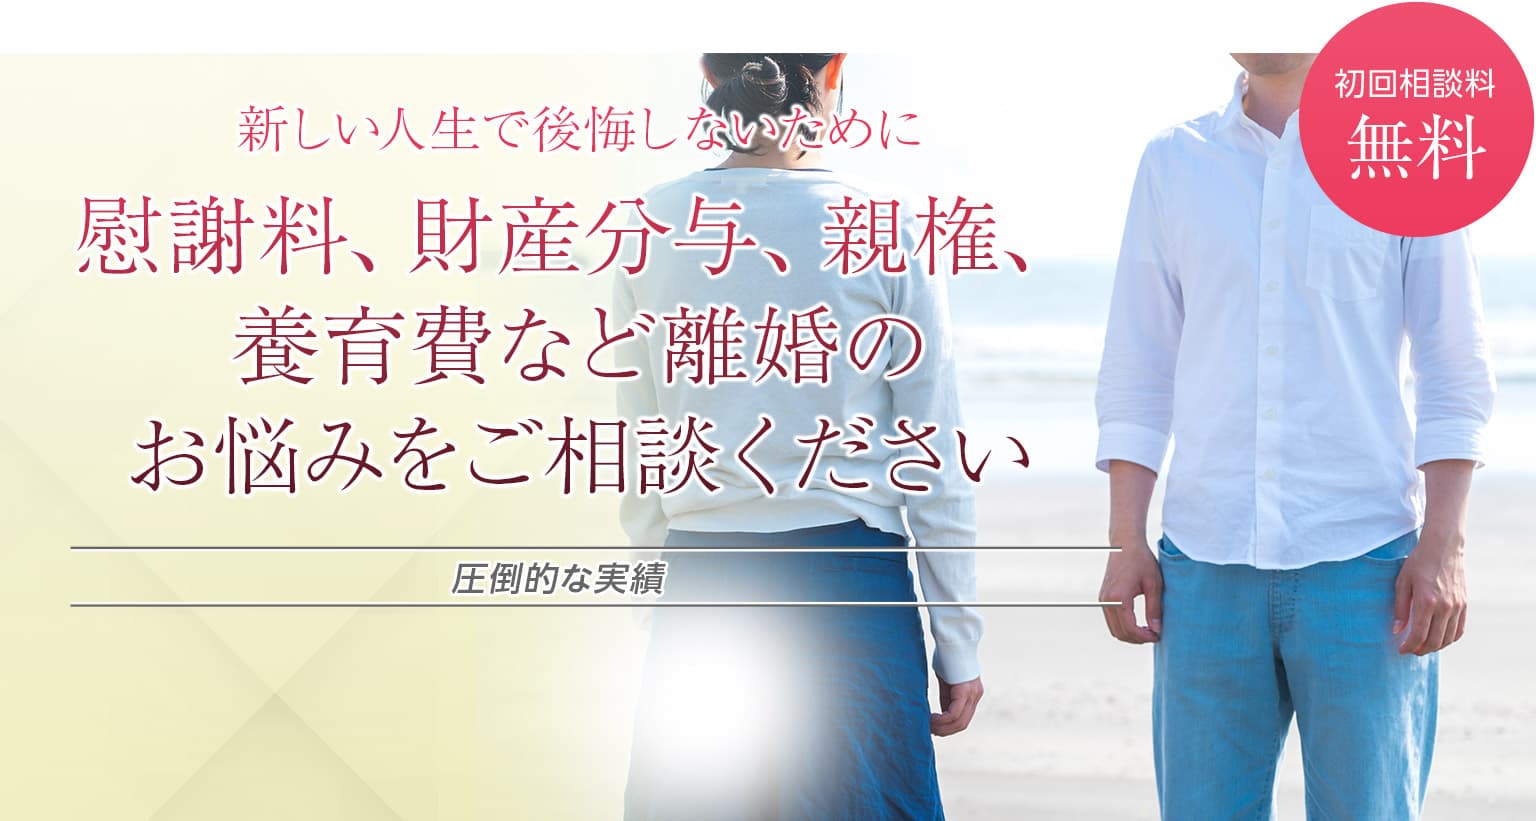 湘南藤沢で離婚 男女問題について弁護士に相談 ベリーベスト法律事務所 湘南藤沢オフィス